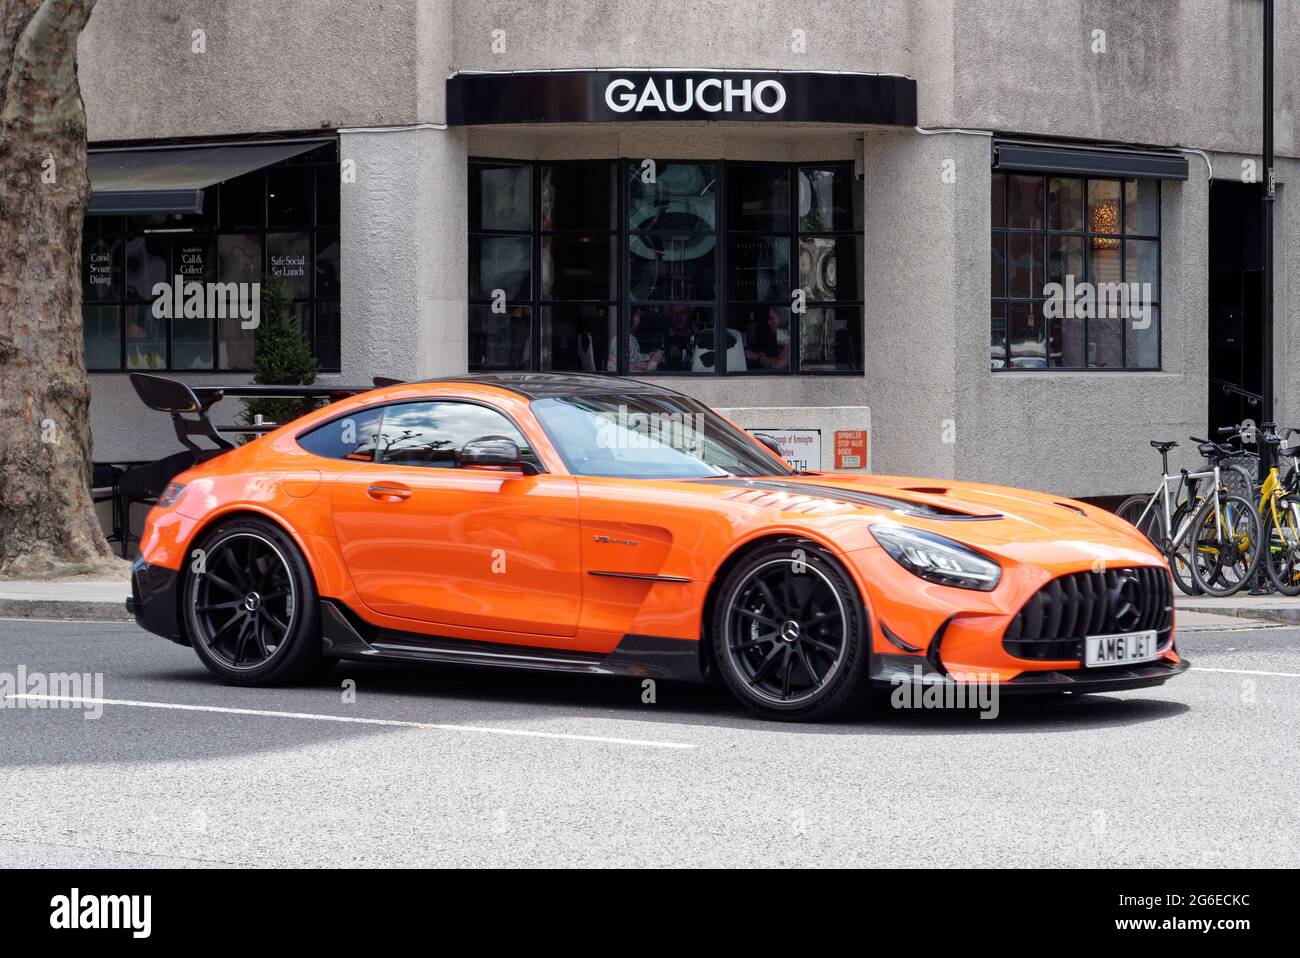 Londres, Grand Londres, Angleterre - juin 12 2021 : voiture de sport Mercedes orange et noire avec un grand plus grand spolier conduit dans une rue. Banque D'Images